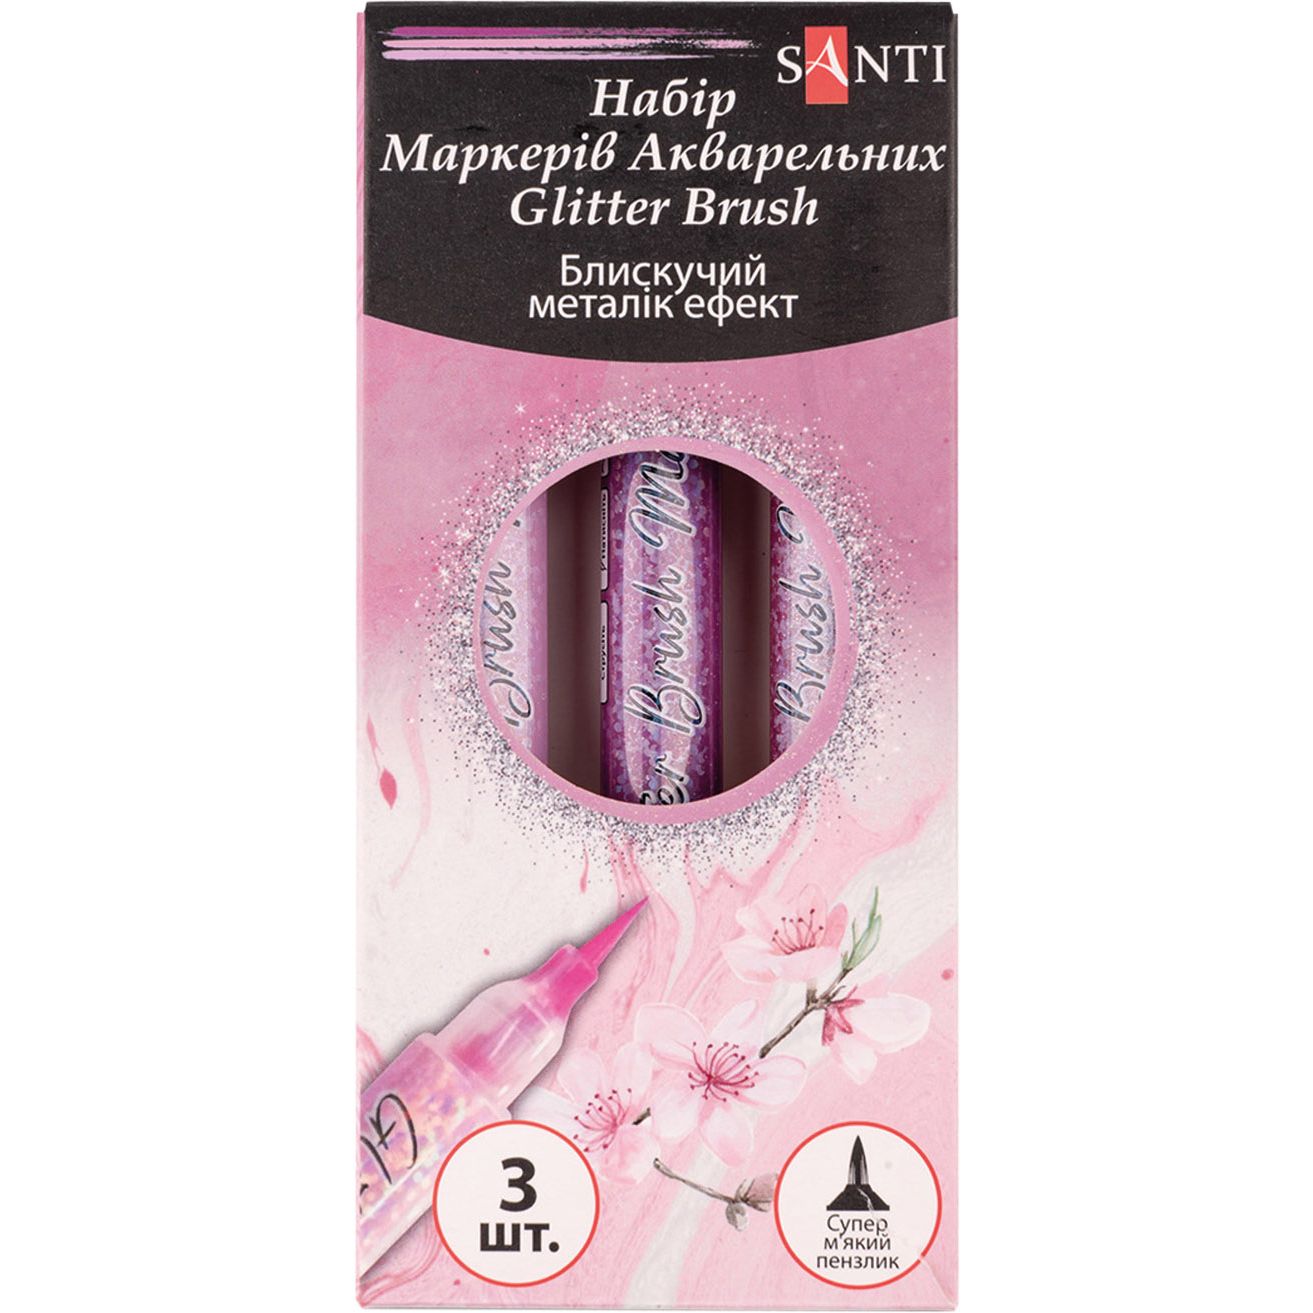 Набір маркерів акварельних Santi Glitter Brush Відтінки рожевого 3 шт. (390773) - фото 1